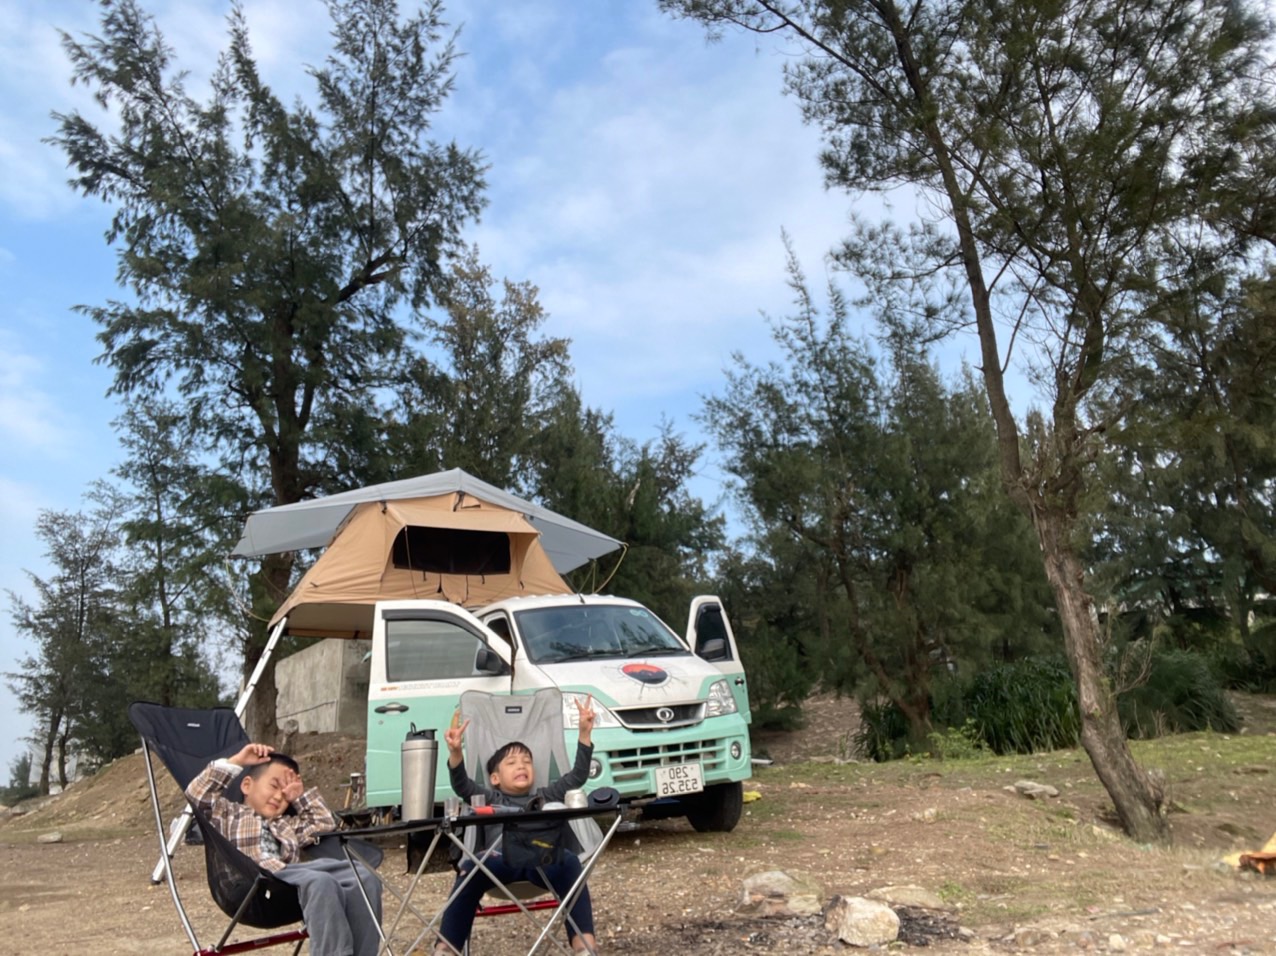 Bán Triton mua xe van THACO hơn 300 triệu độ camping chạy Bắc Nam hơn 18.000km, chủ xe trải lòng: 'Vui, tiện nhưng đi xa hơi cực' - Ảnh 2.